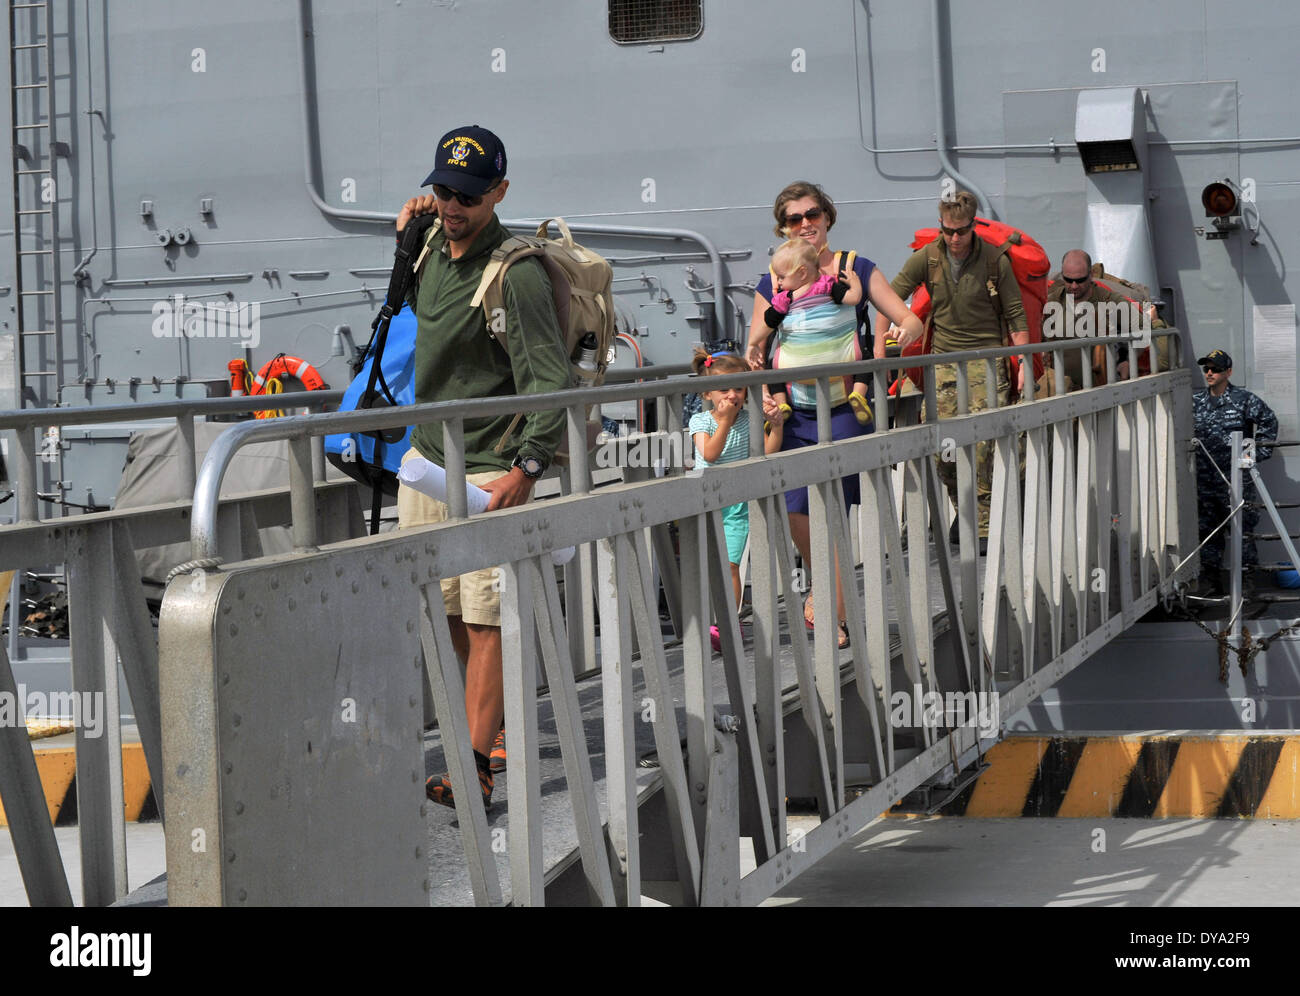 La famille Kaufman débarque la classe Oliver Hazard Perry frégate lance-missiles USS Vandegrift, le 9 avril 2014 à San Diego, CA. L Kaufman's ont été sur un voyage à travers le monde quand ils ont dû être secourus au large des côtes du Mexique. Banque D'Images